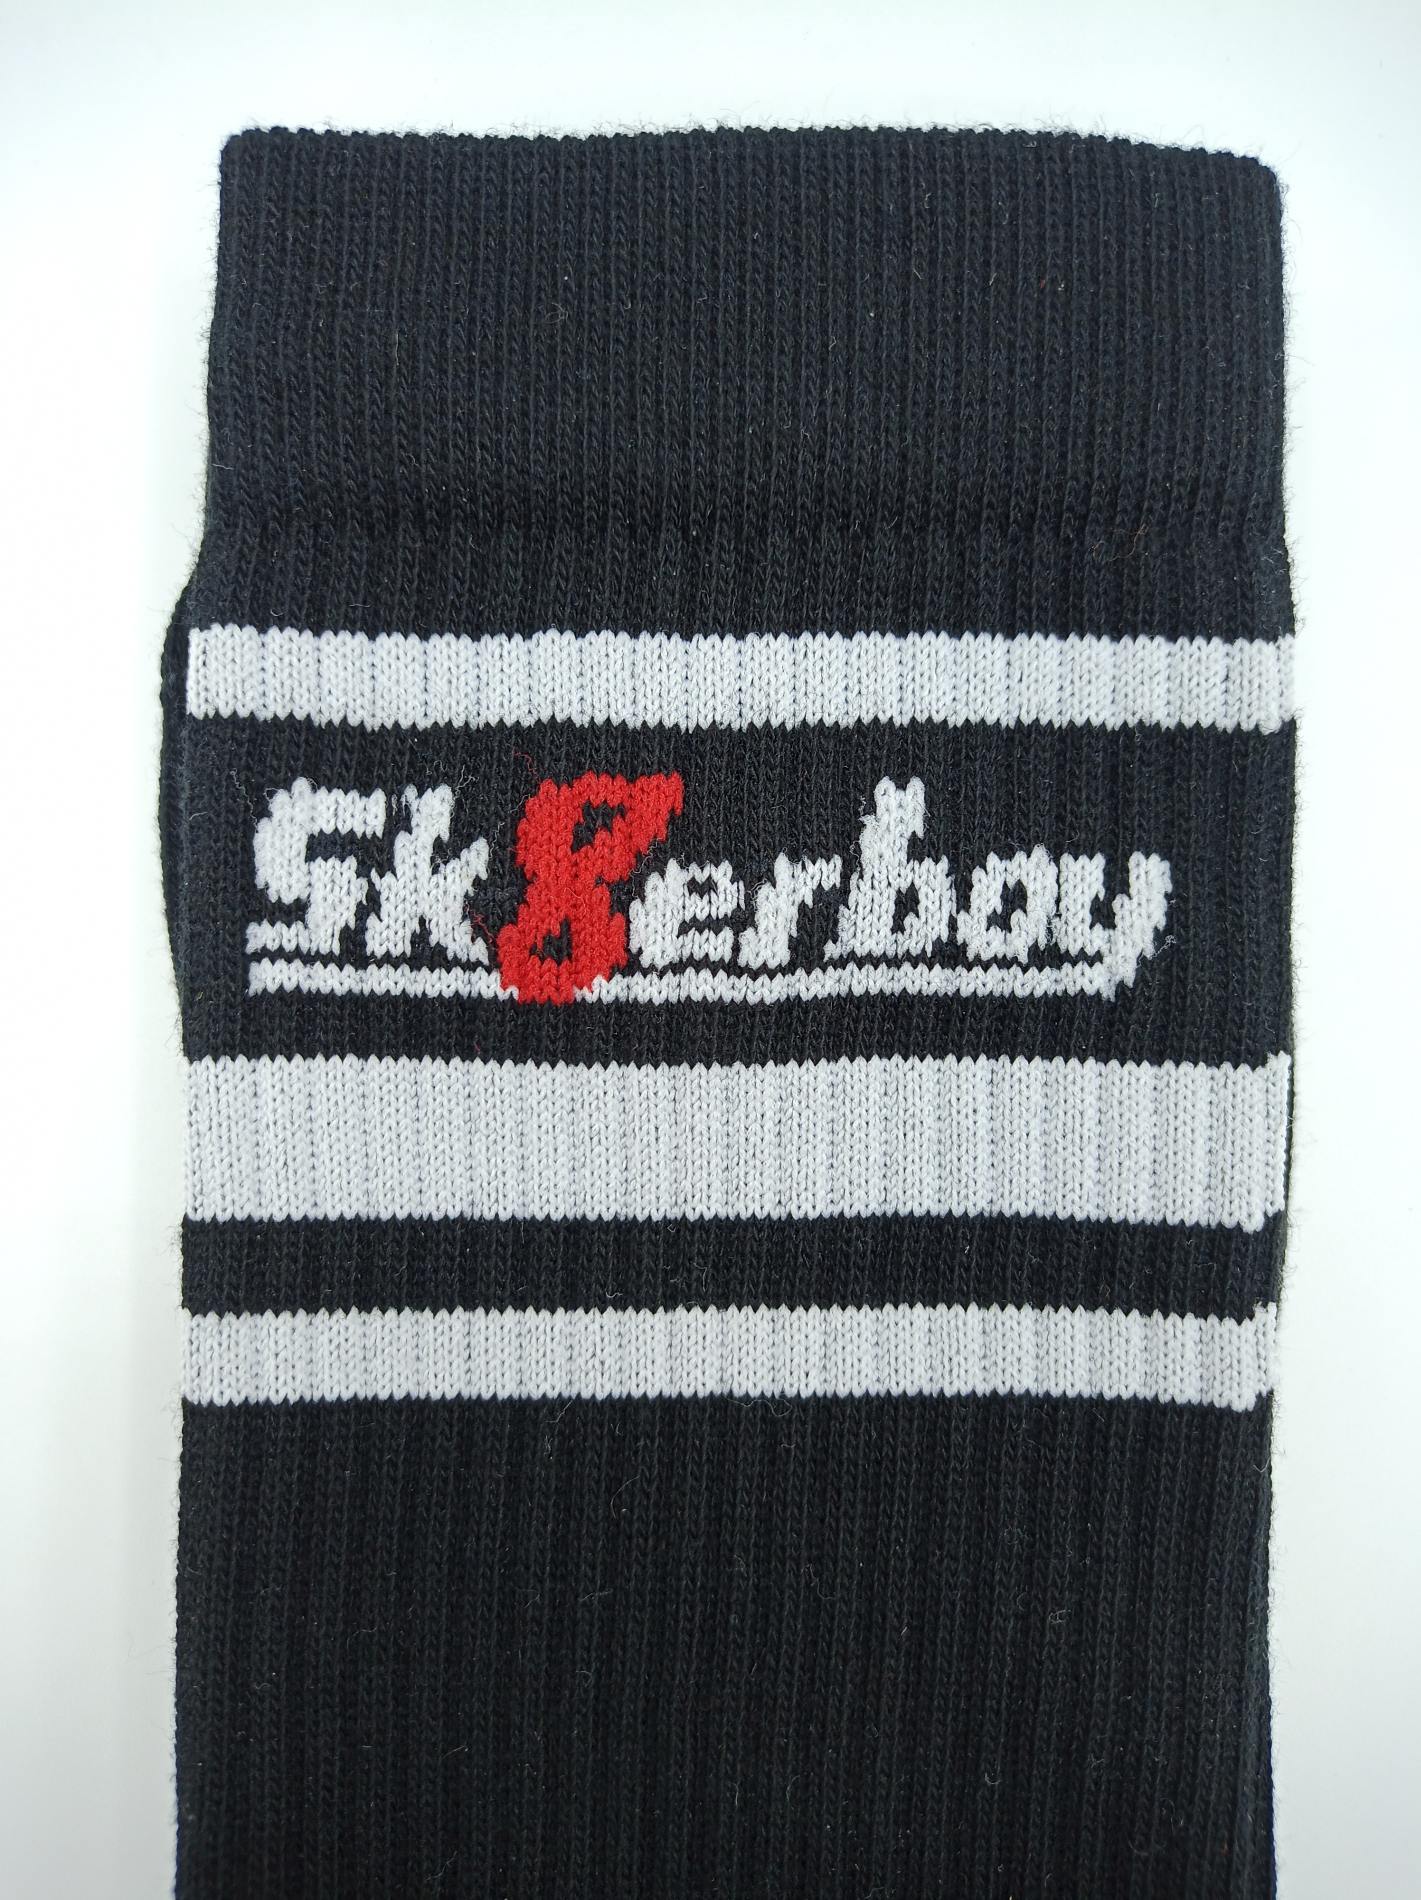 sk8erboy victory socken extra dünn in bekannter qualität jedoch besonders leicht und ideal für den sommer in schwarz nahaufnahme vom bund und sk8erboy-logo